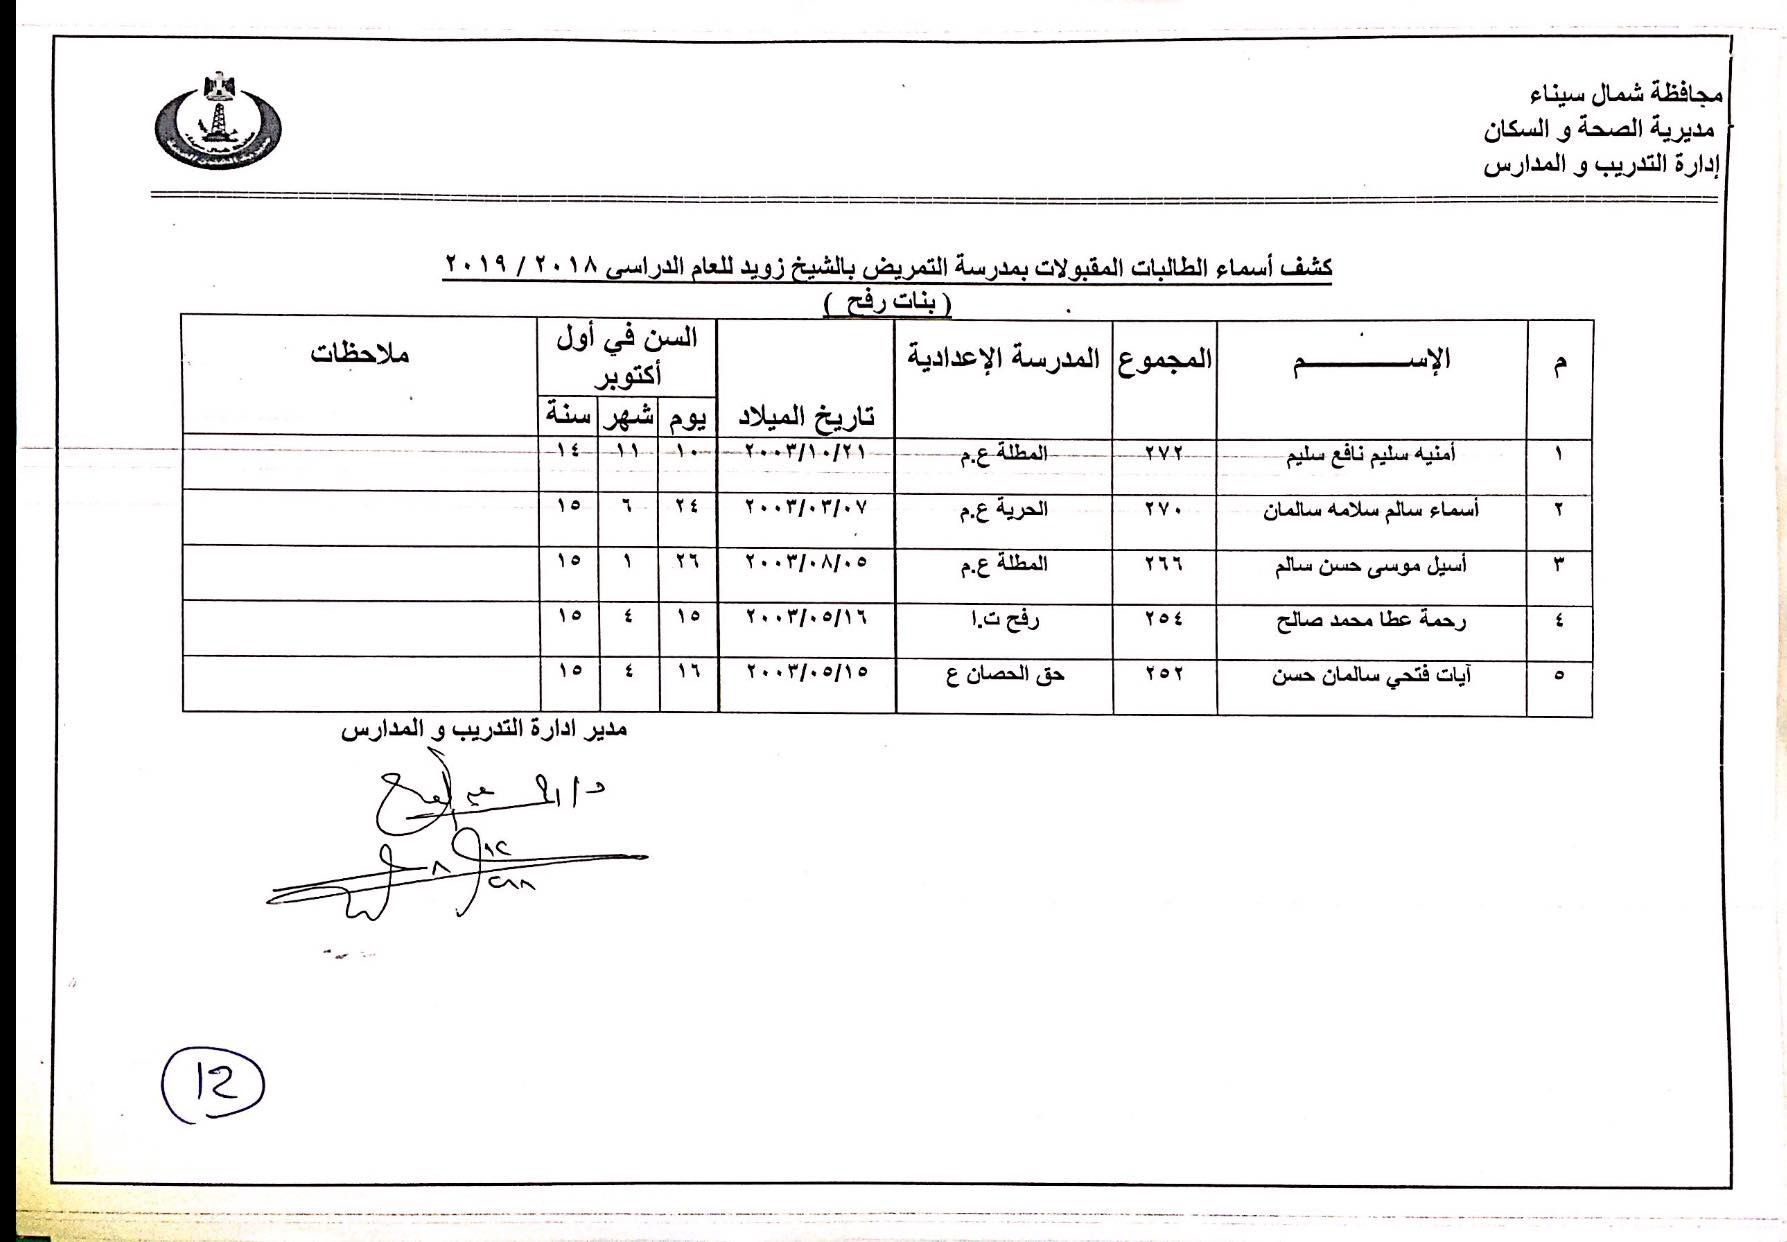 أسماء المقبولين بمدارس التمريض بشمال سيناء (12)